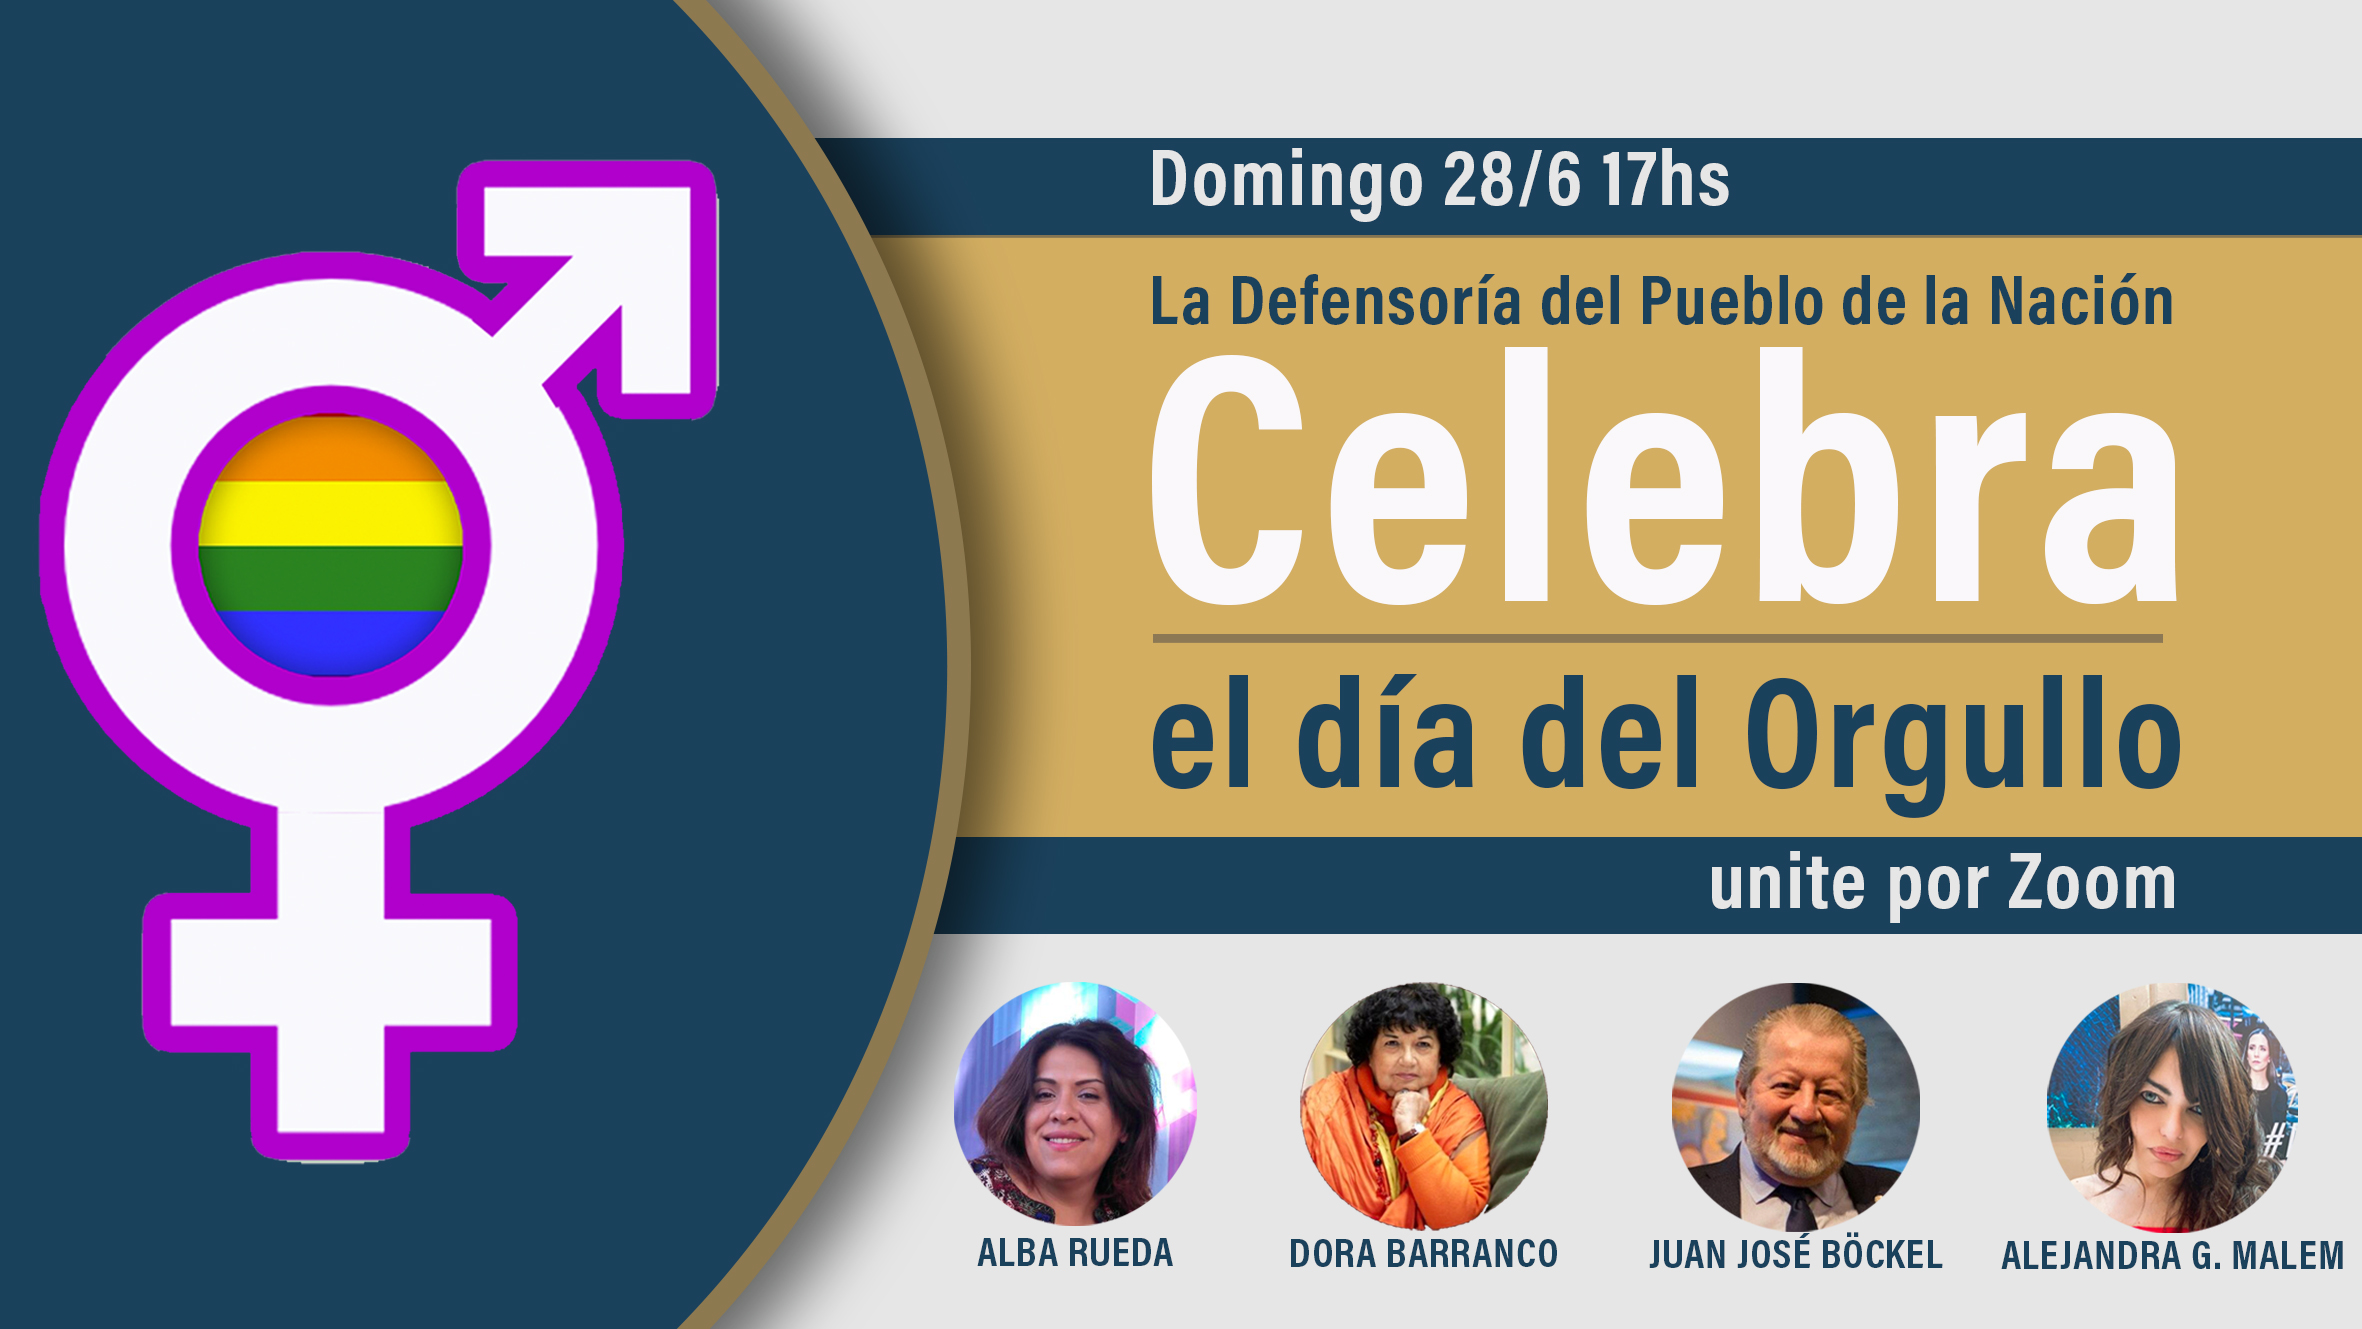 Junto a Dora Barranco y Alba Rueda, la Defensoría del Pueblo de la Nación invita a celebrar el Día Internacional del Orgullo